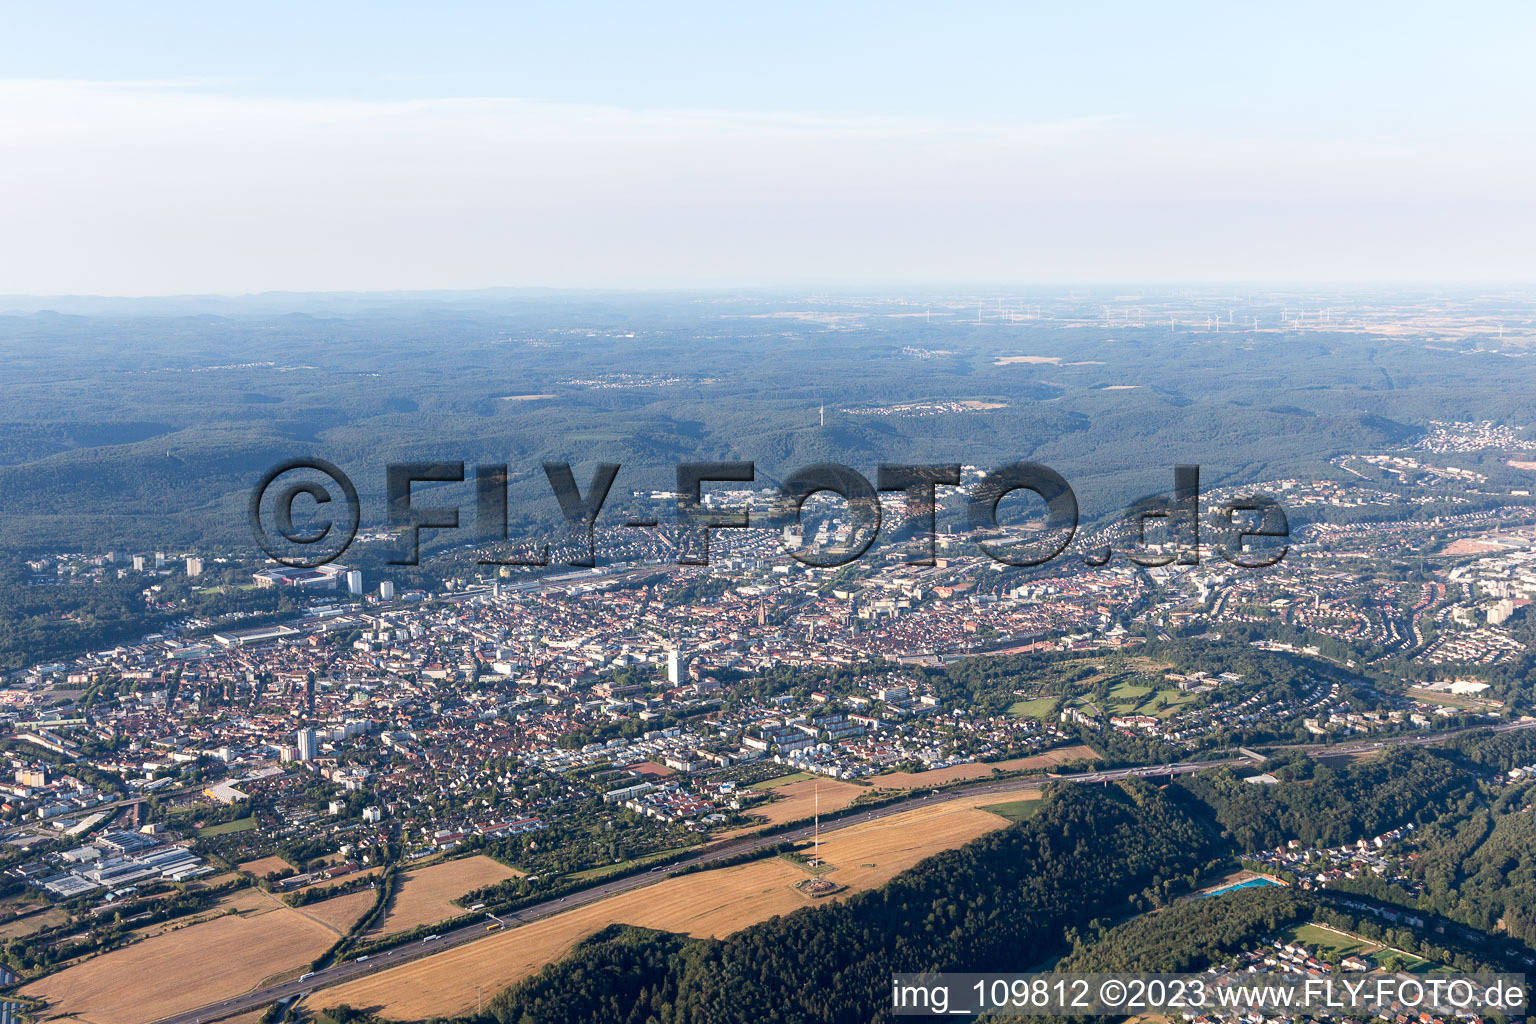 Kaiserslautern dans le département Rhénanie-Palatinat, Allemagne vue d'en haut